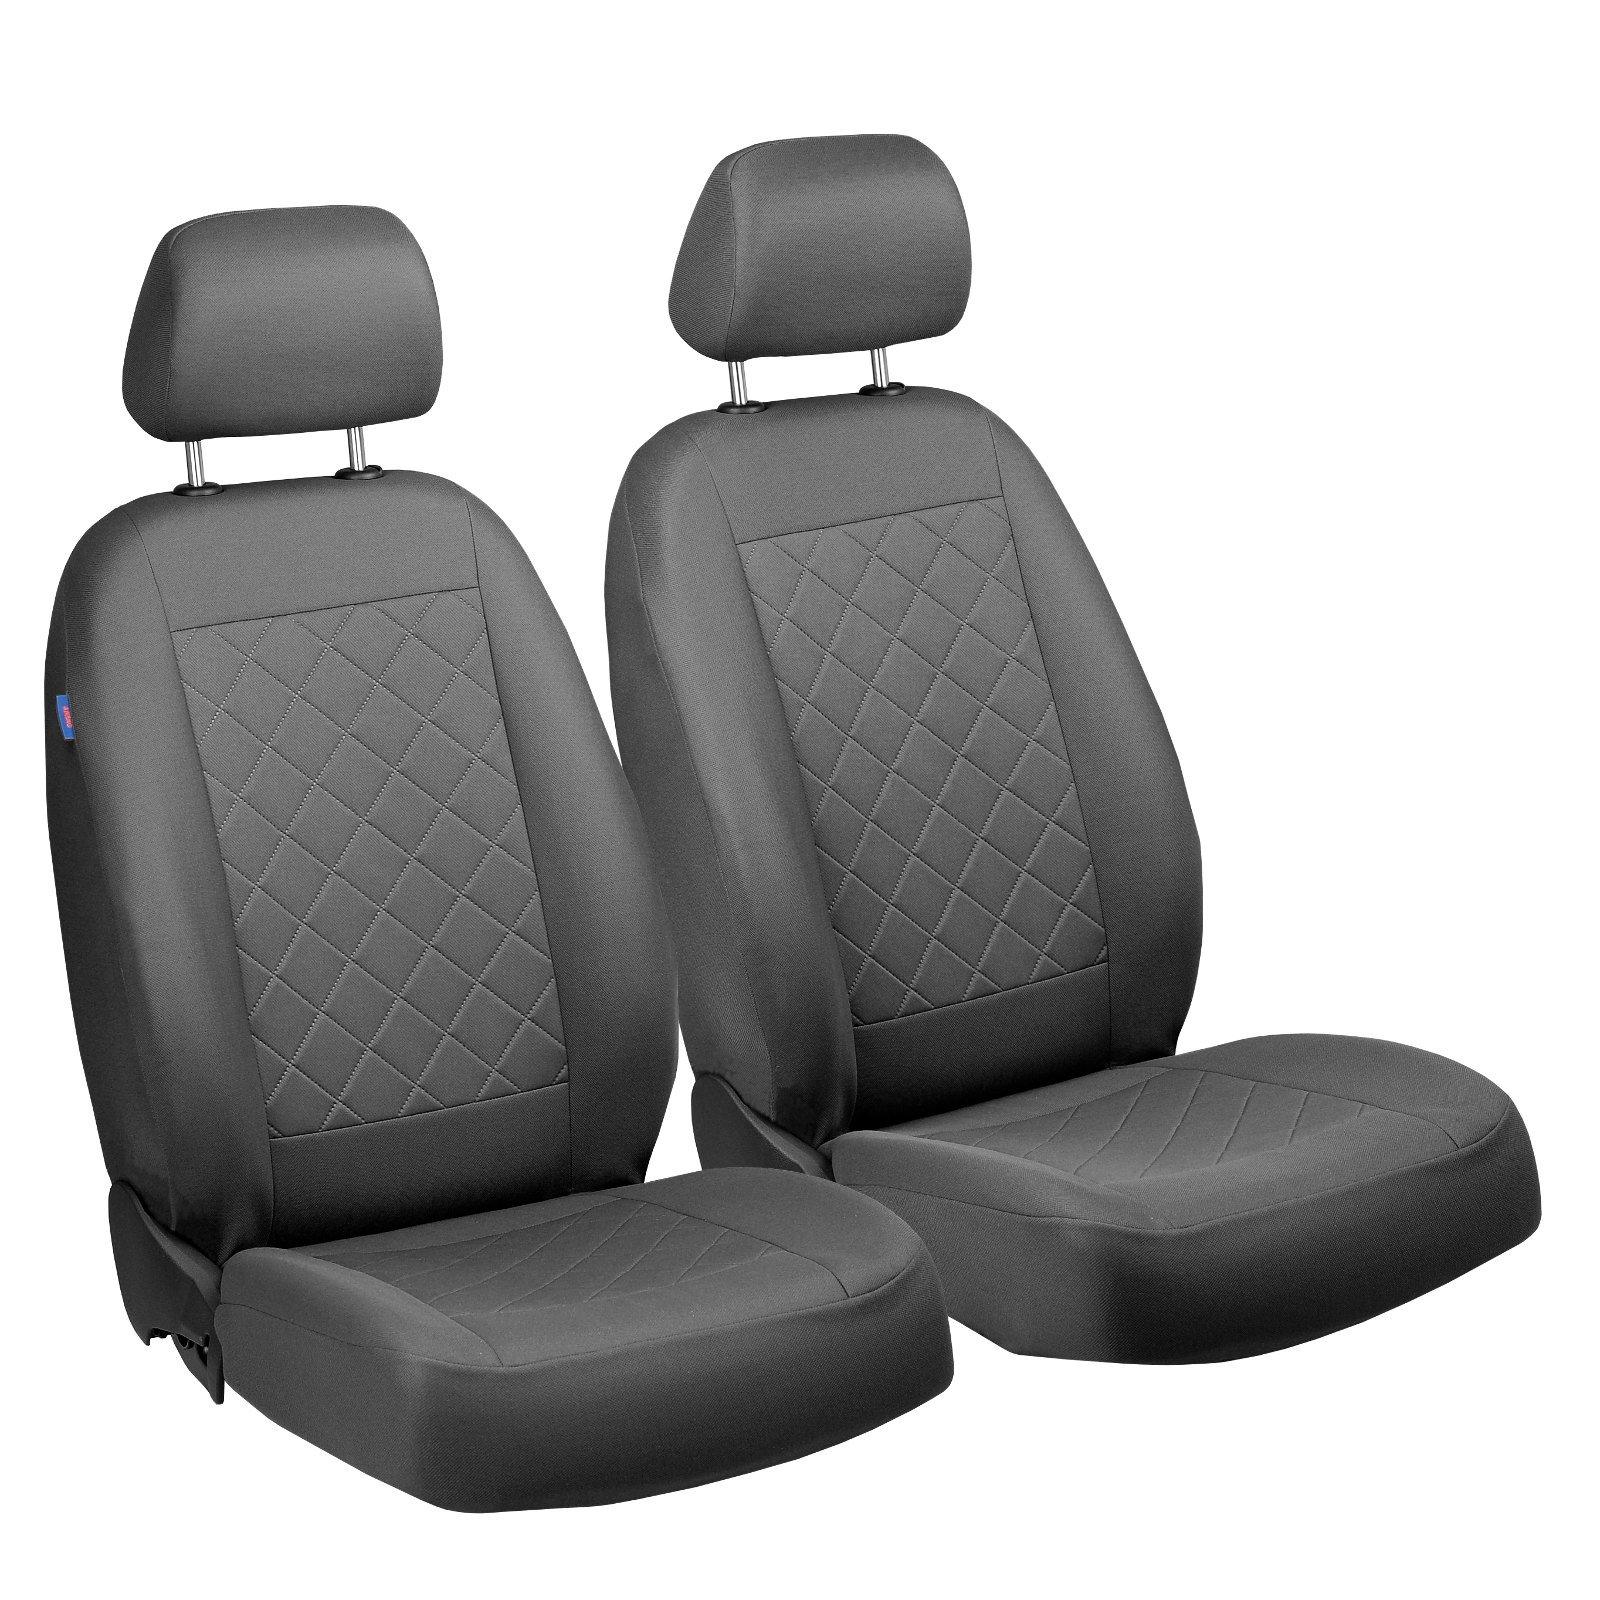 Berlingo Vorne Sitzbezüge - für Fahrer und Beifahrer - Farbe Premium Grau Gepresstes Karomuster